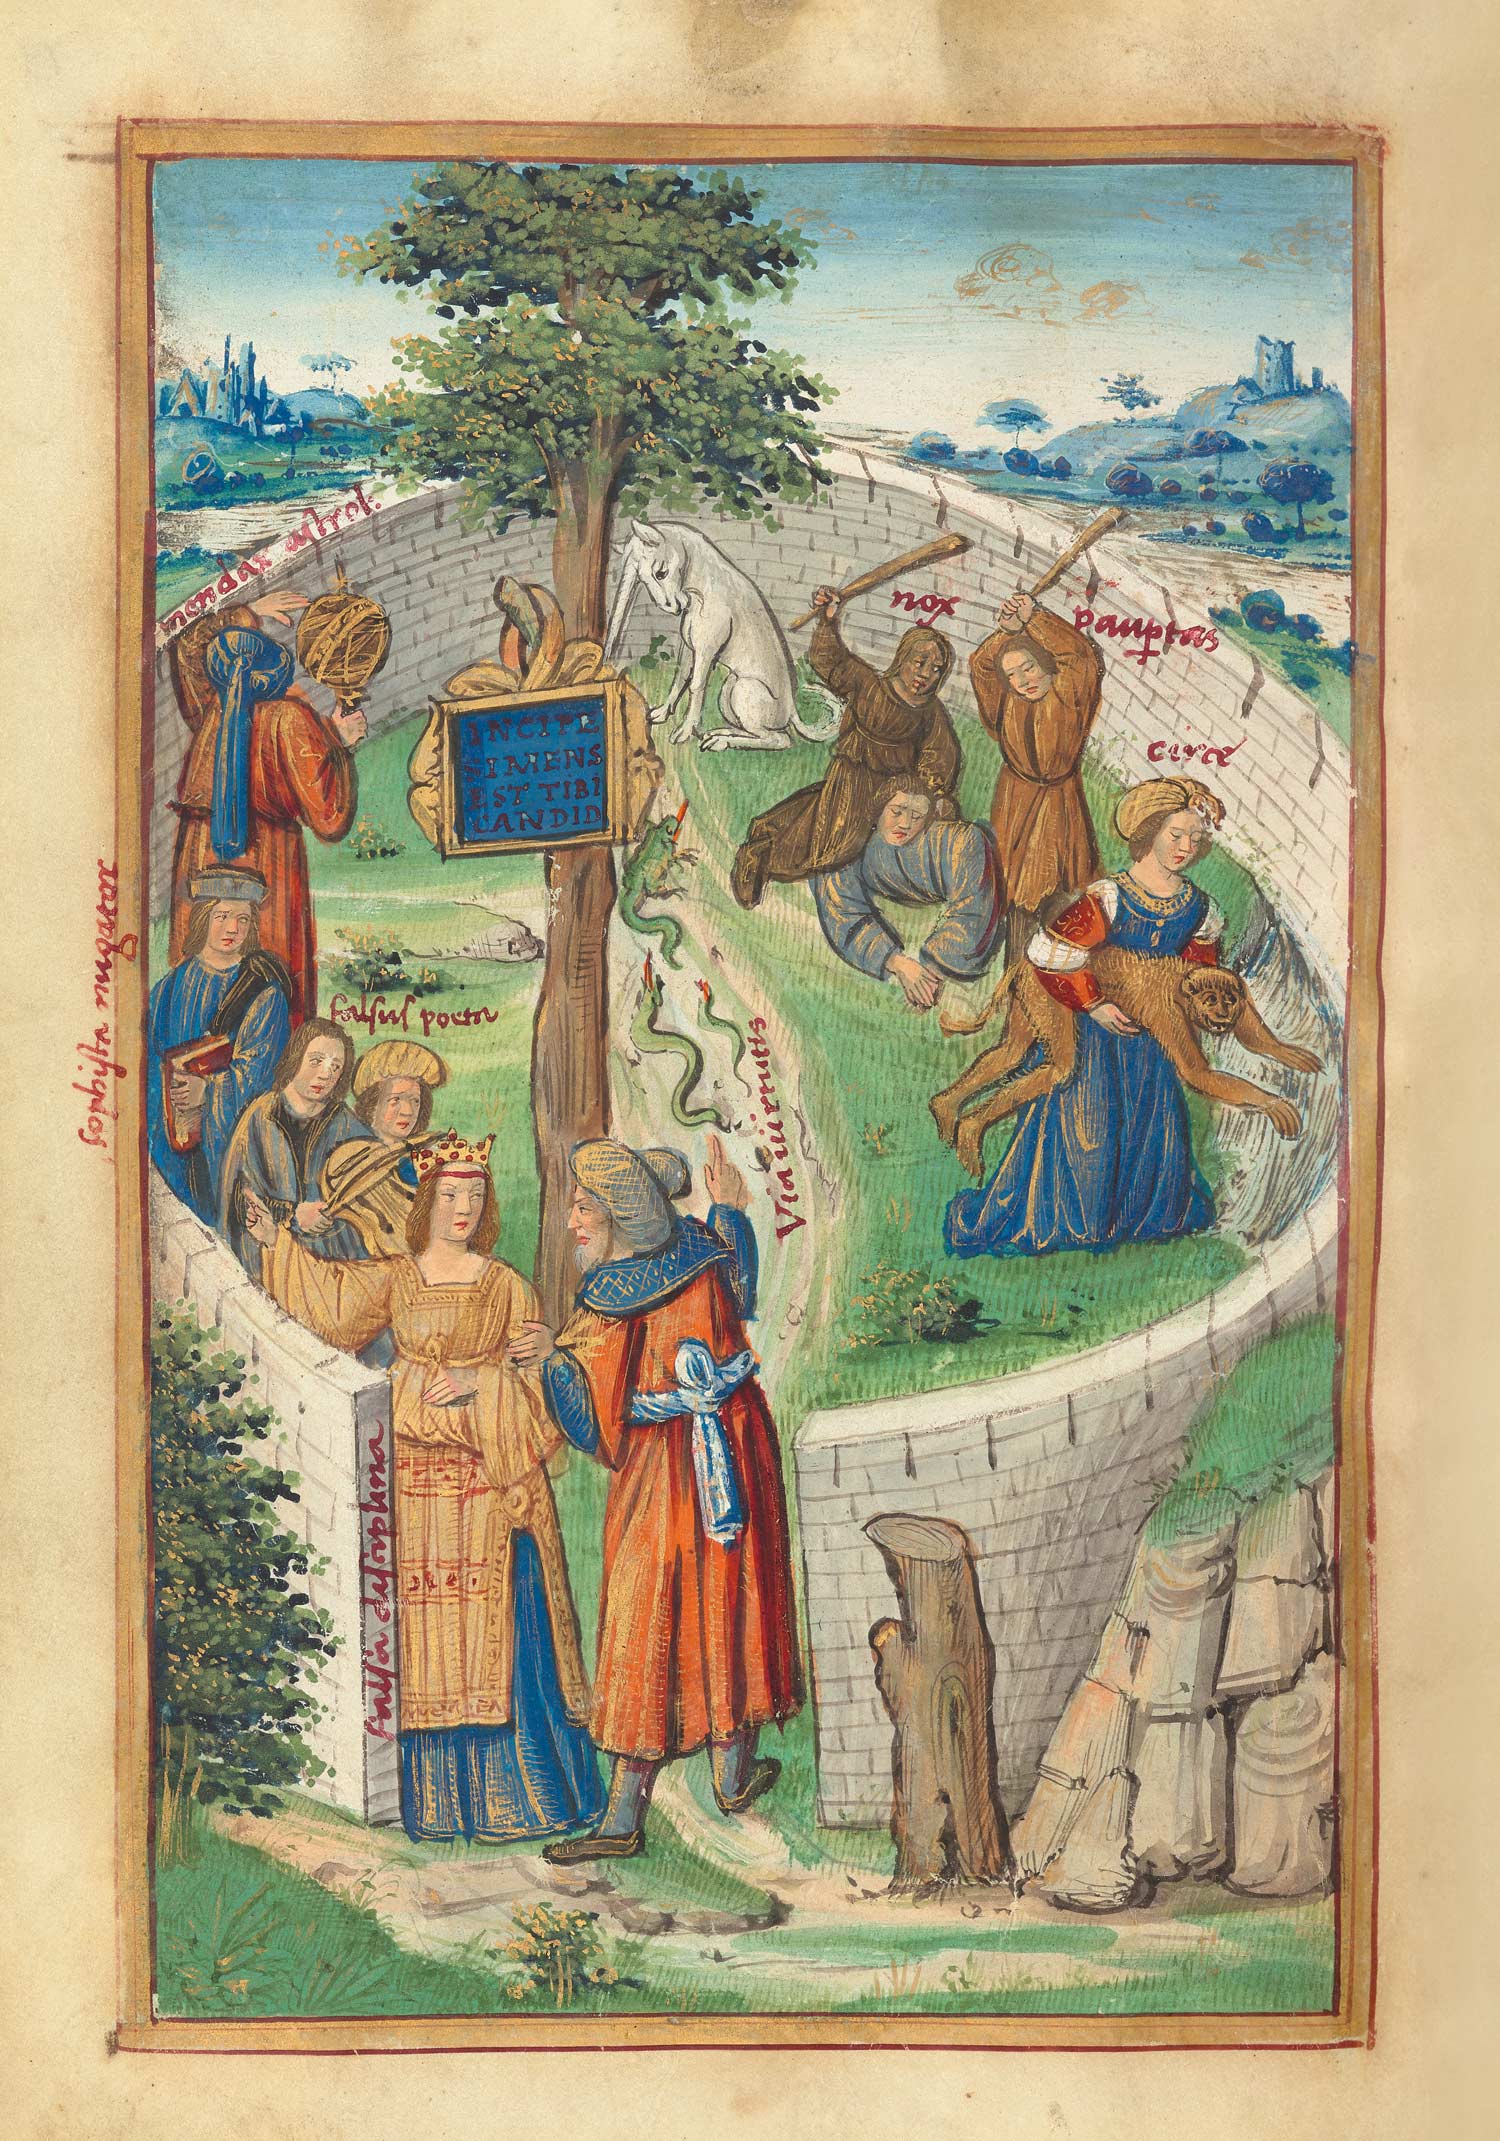 Folio 10v: Die Laster und deren Folgen